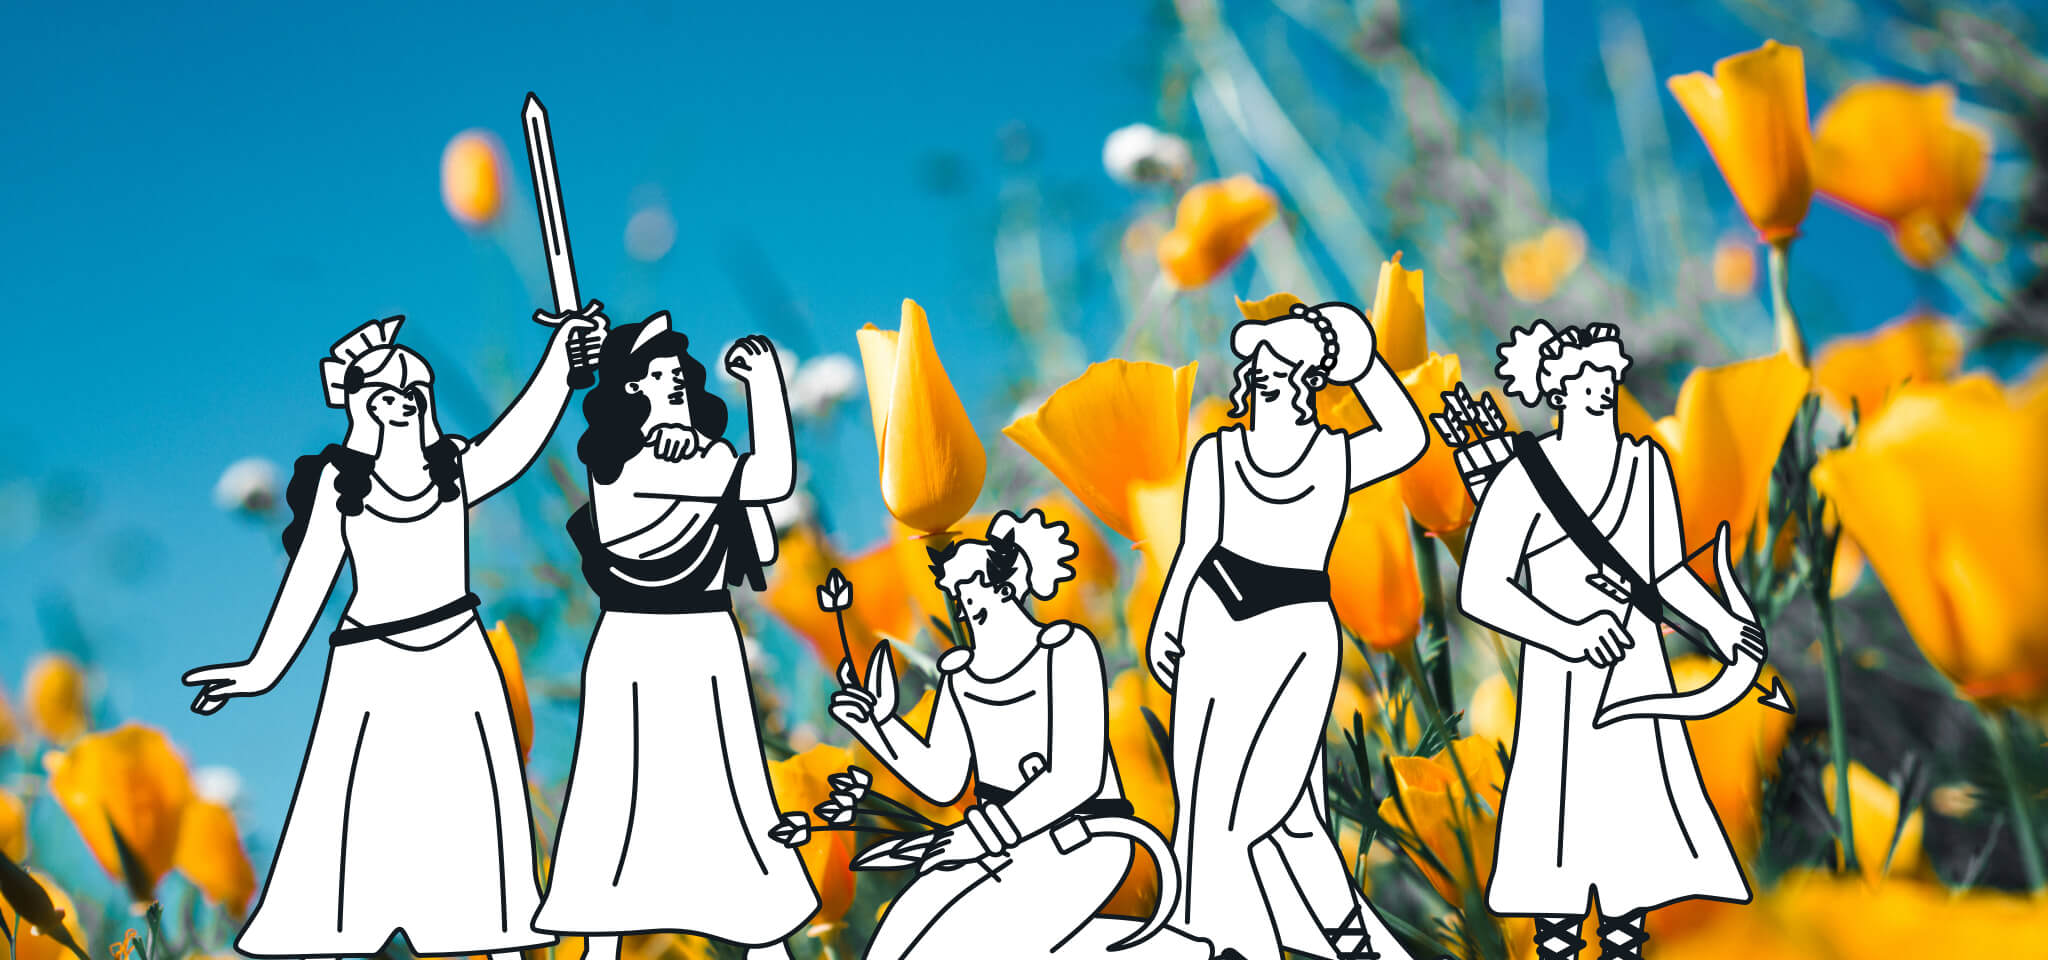 Cinq déesses célèbrent la Journée internationale de la femme